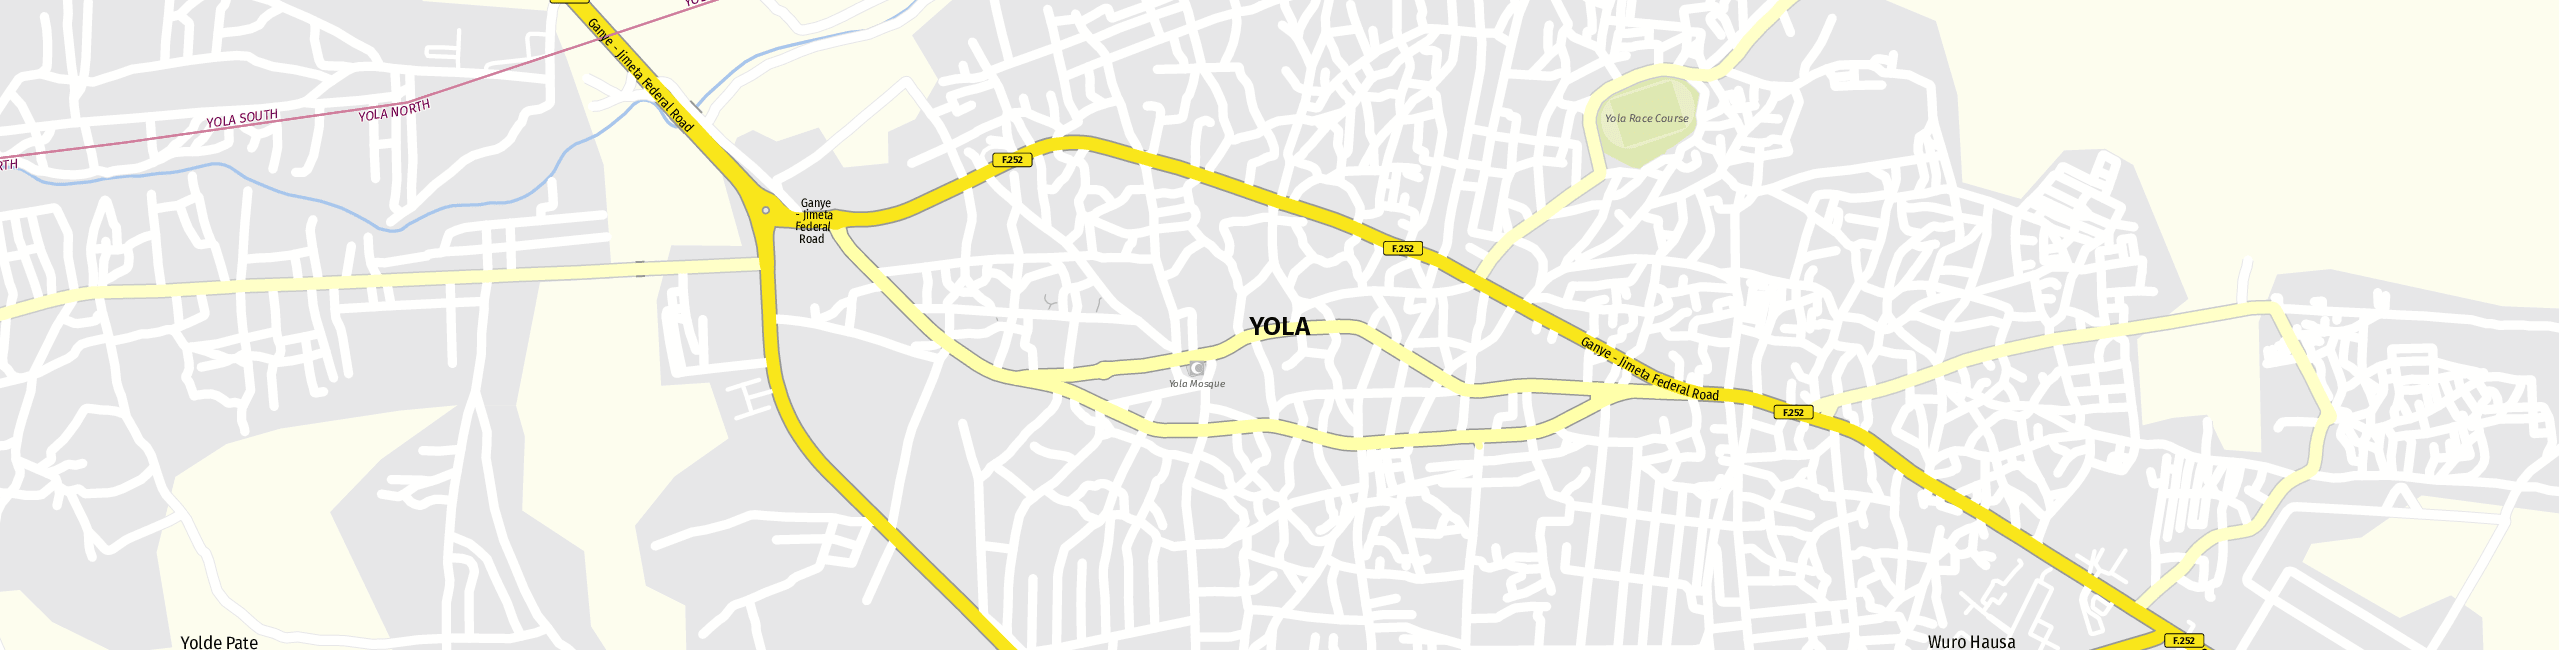 Stadtplan Yola zum Downloaden.